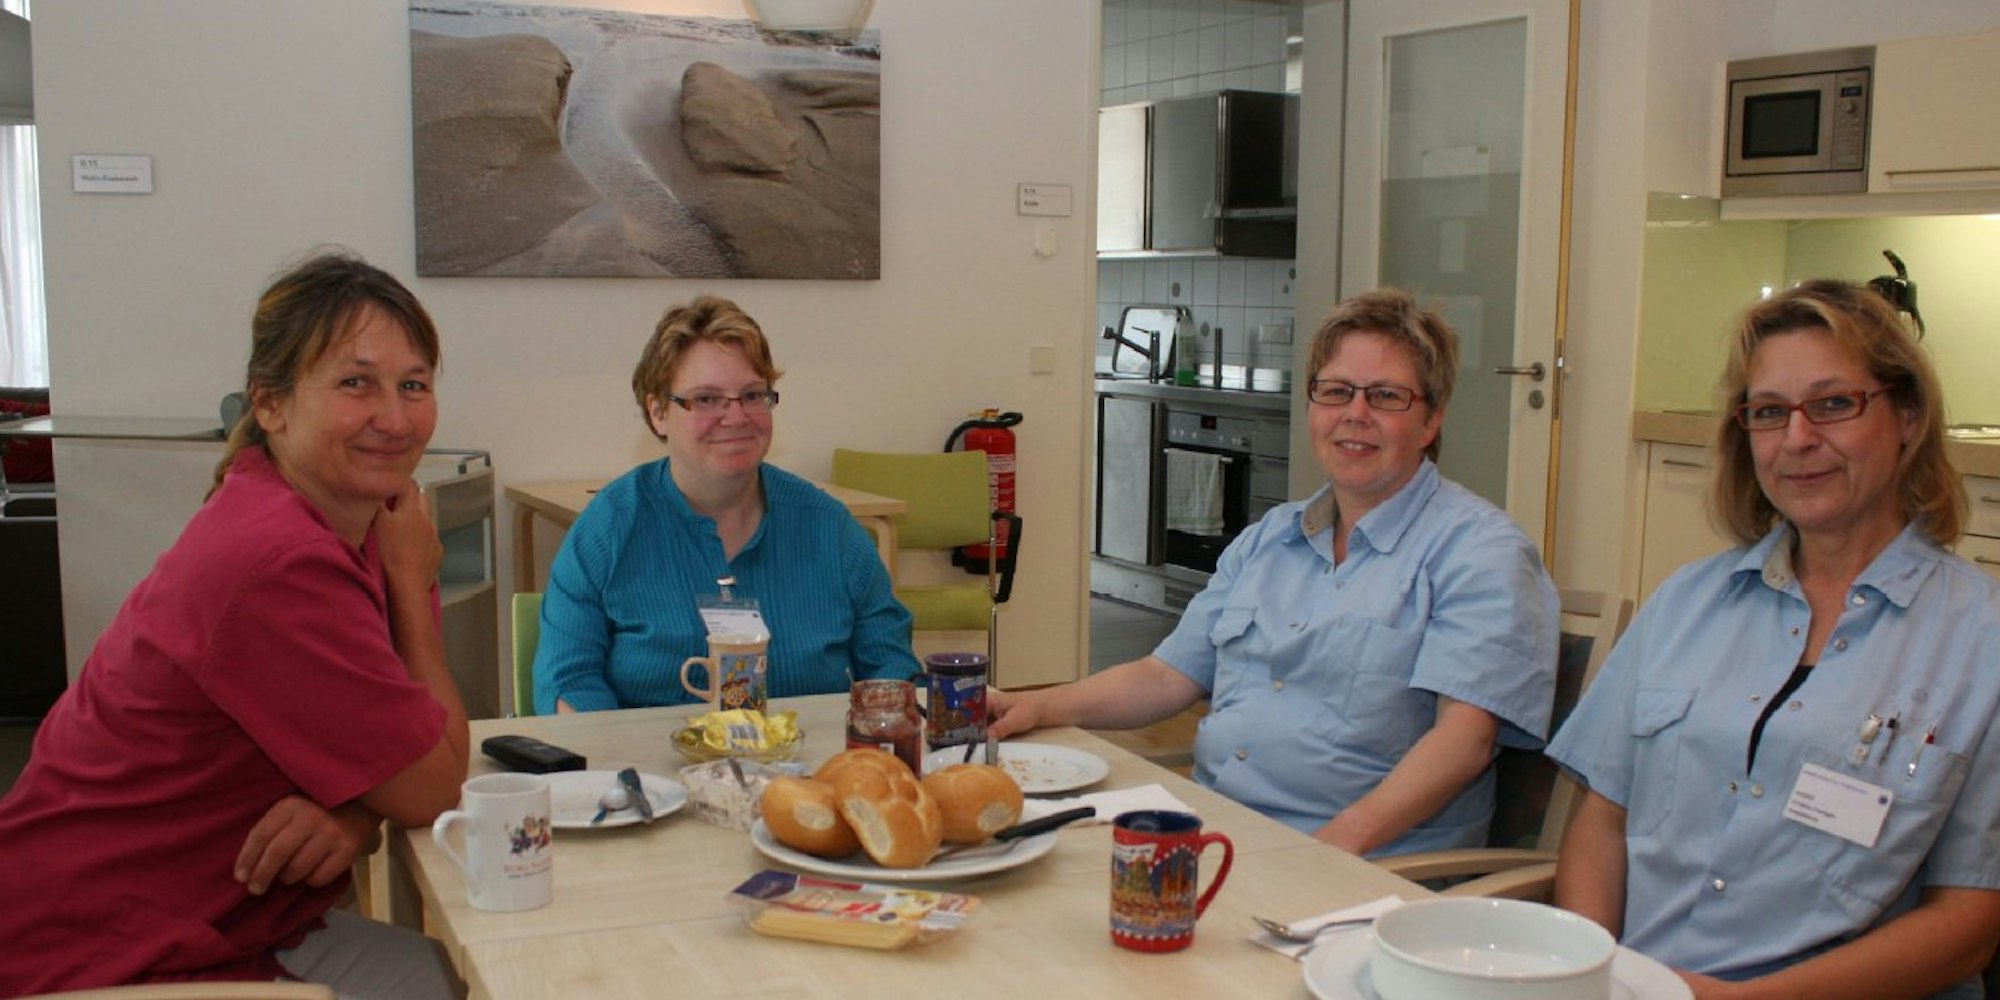 Sabine Sauer, Nicola Weny, Christine Luppus und Christine Poensgen nutzen auch die Frühstückspause, um sich untereinander auszutauschen. Bild: Tucholke